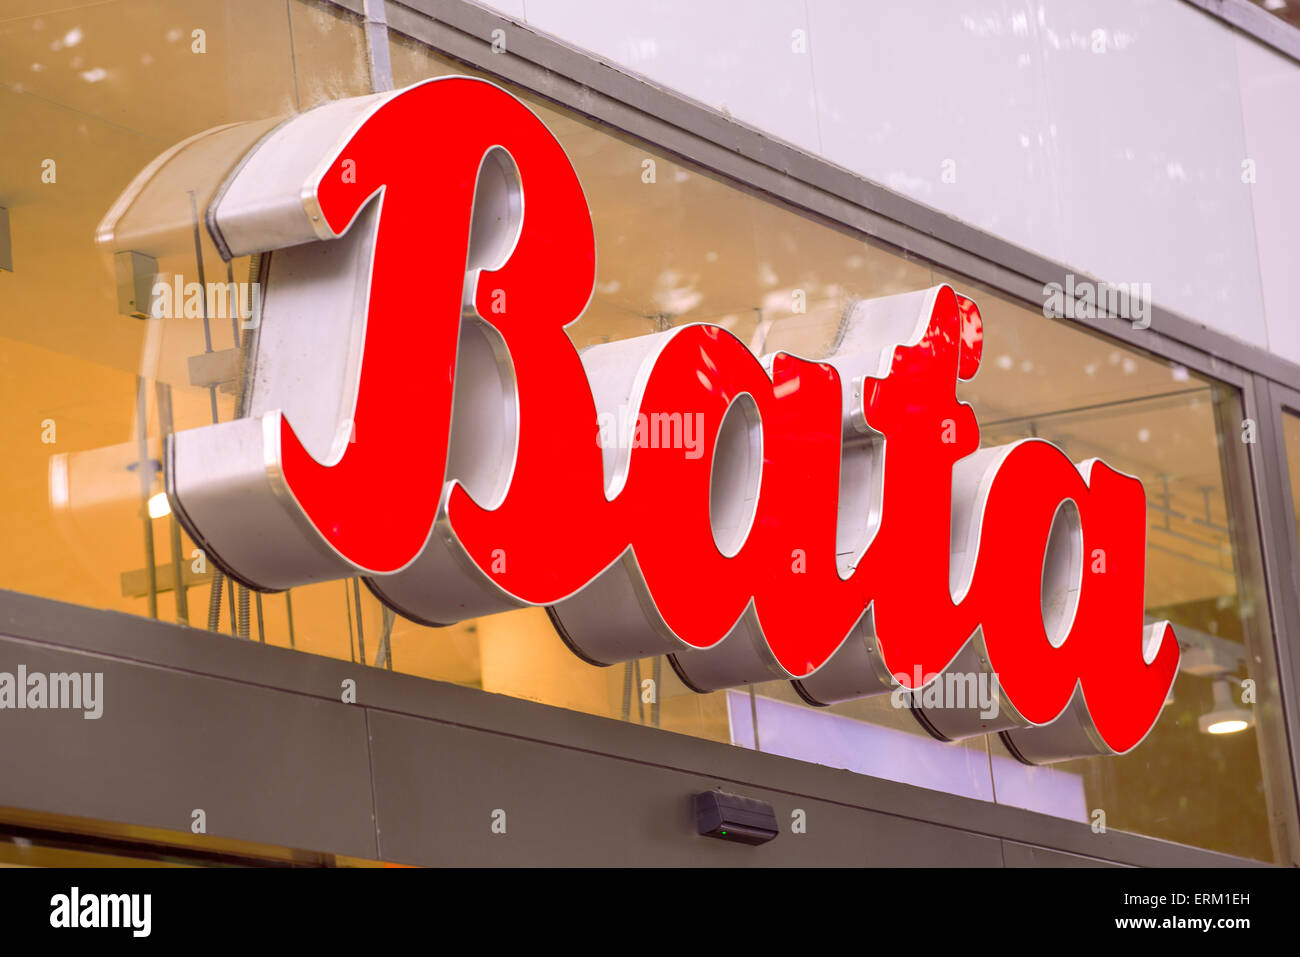 Praga, Repubblica Ceca - 25 Maggio 2015: Bata Shoe logo del negozio a Praga. Bata è presente in oltre 70 paesi in tutto il mondo e ha ov Foto Stock